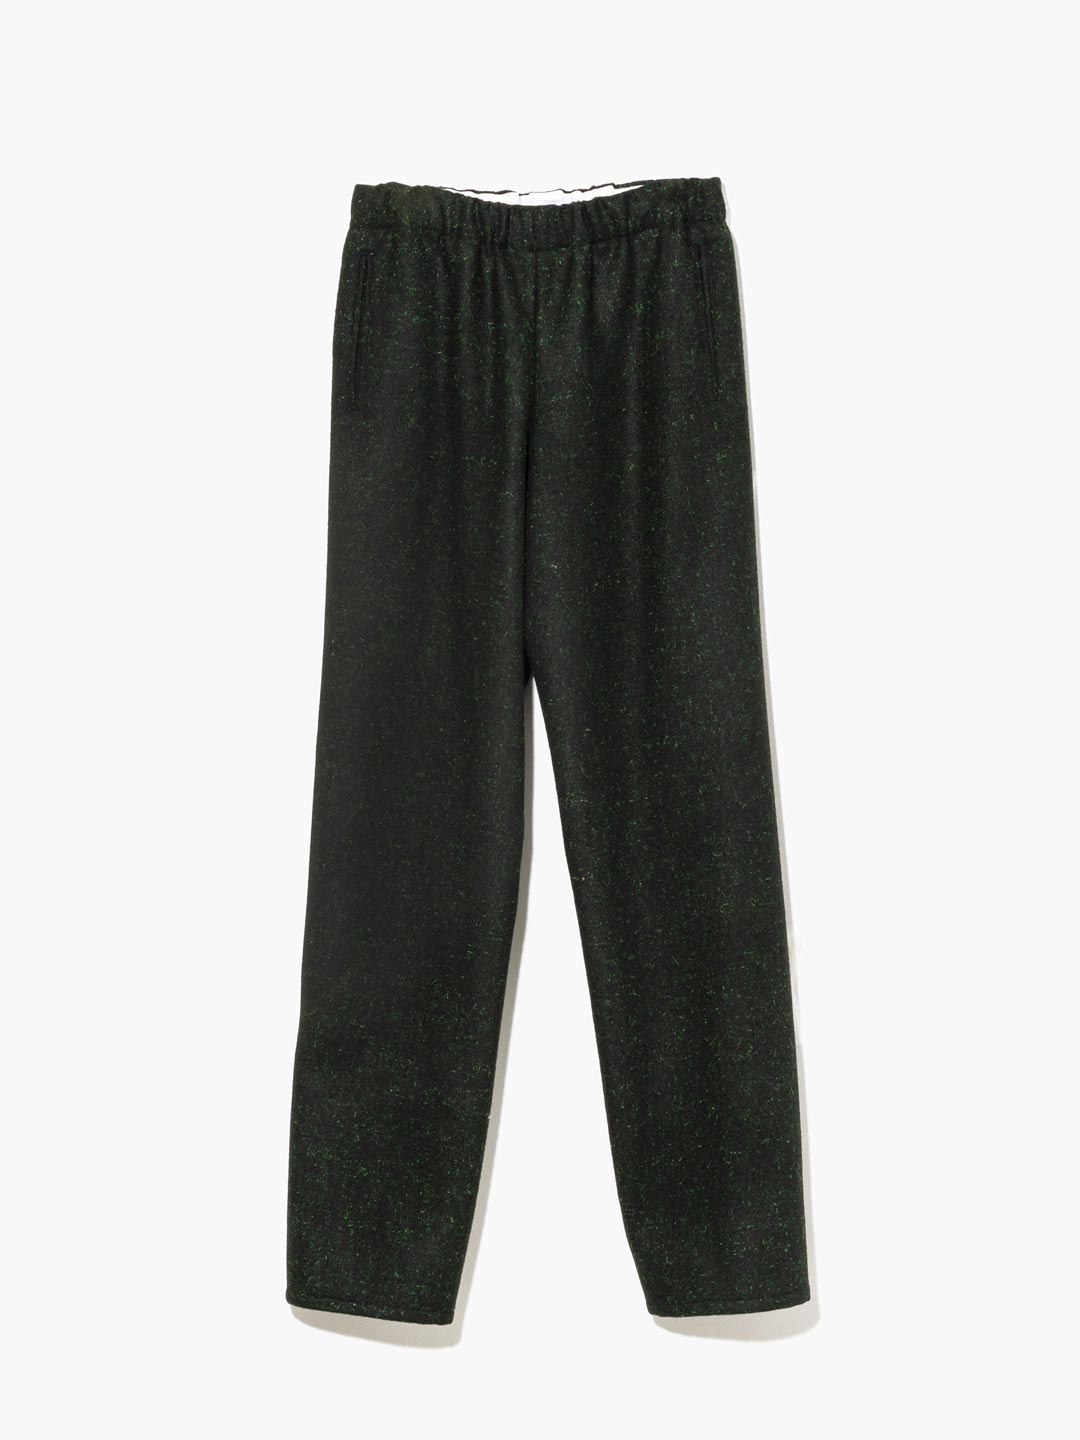 Wool Melton Drawstring Trouser - Dark Green